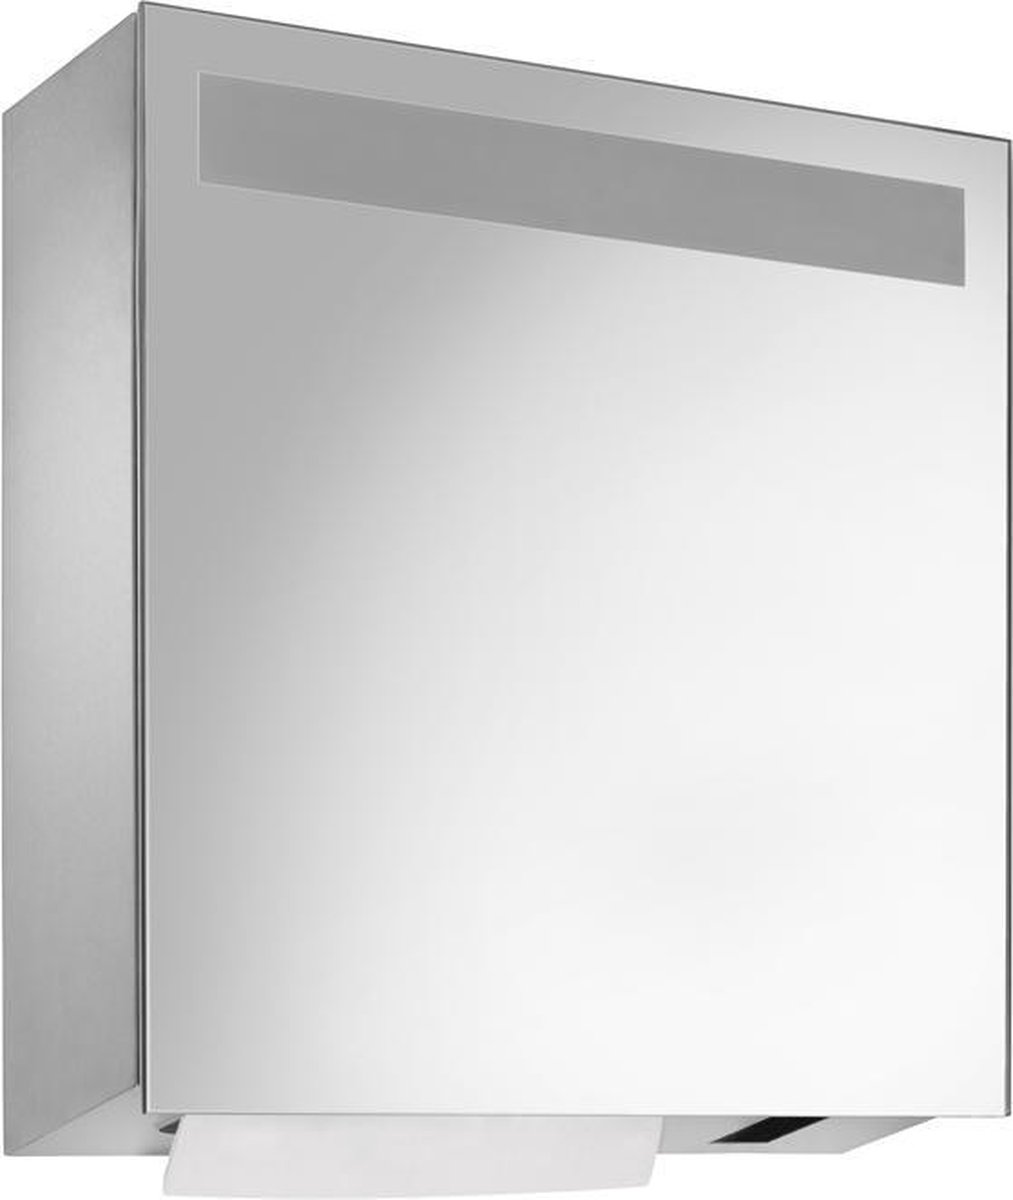 RVS spiegelkast WP600e met sensor zeep- en handdoekdispenser van Wagner EWAR